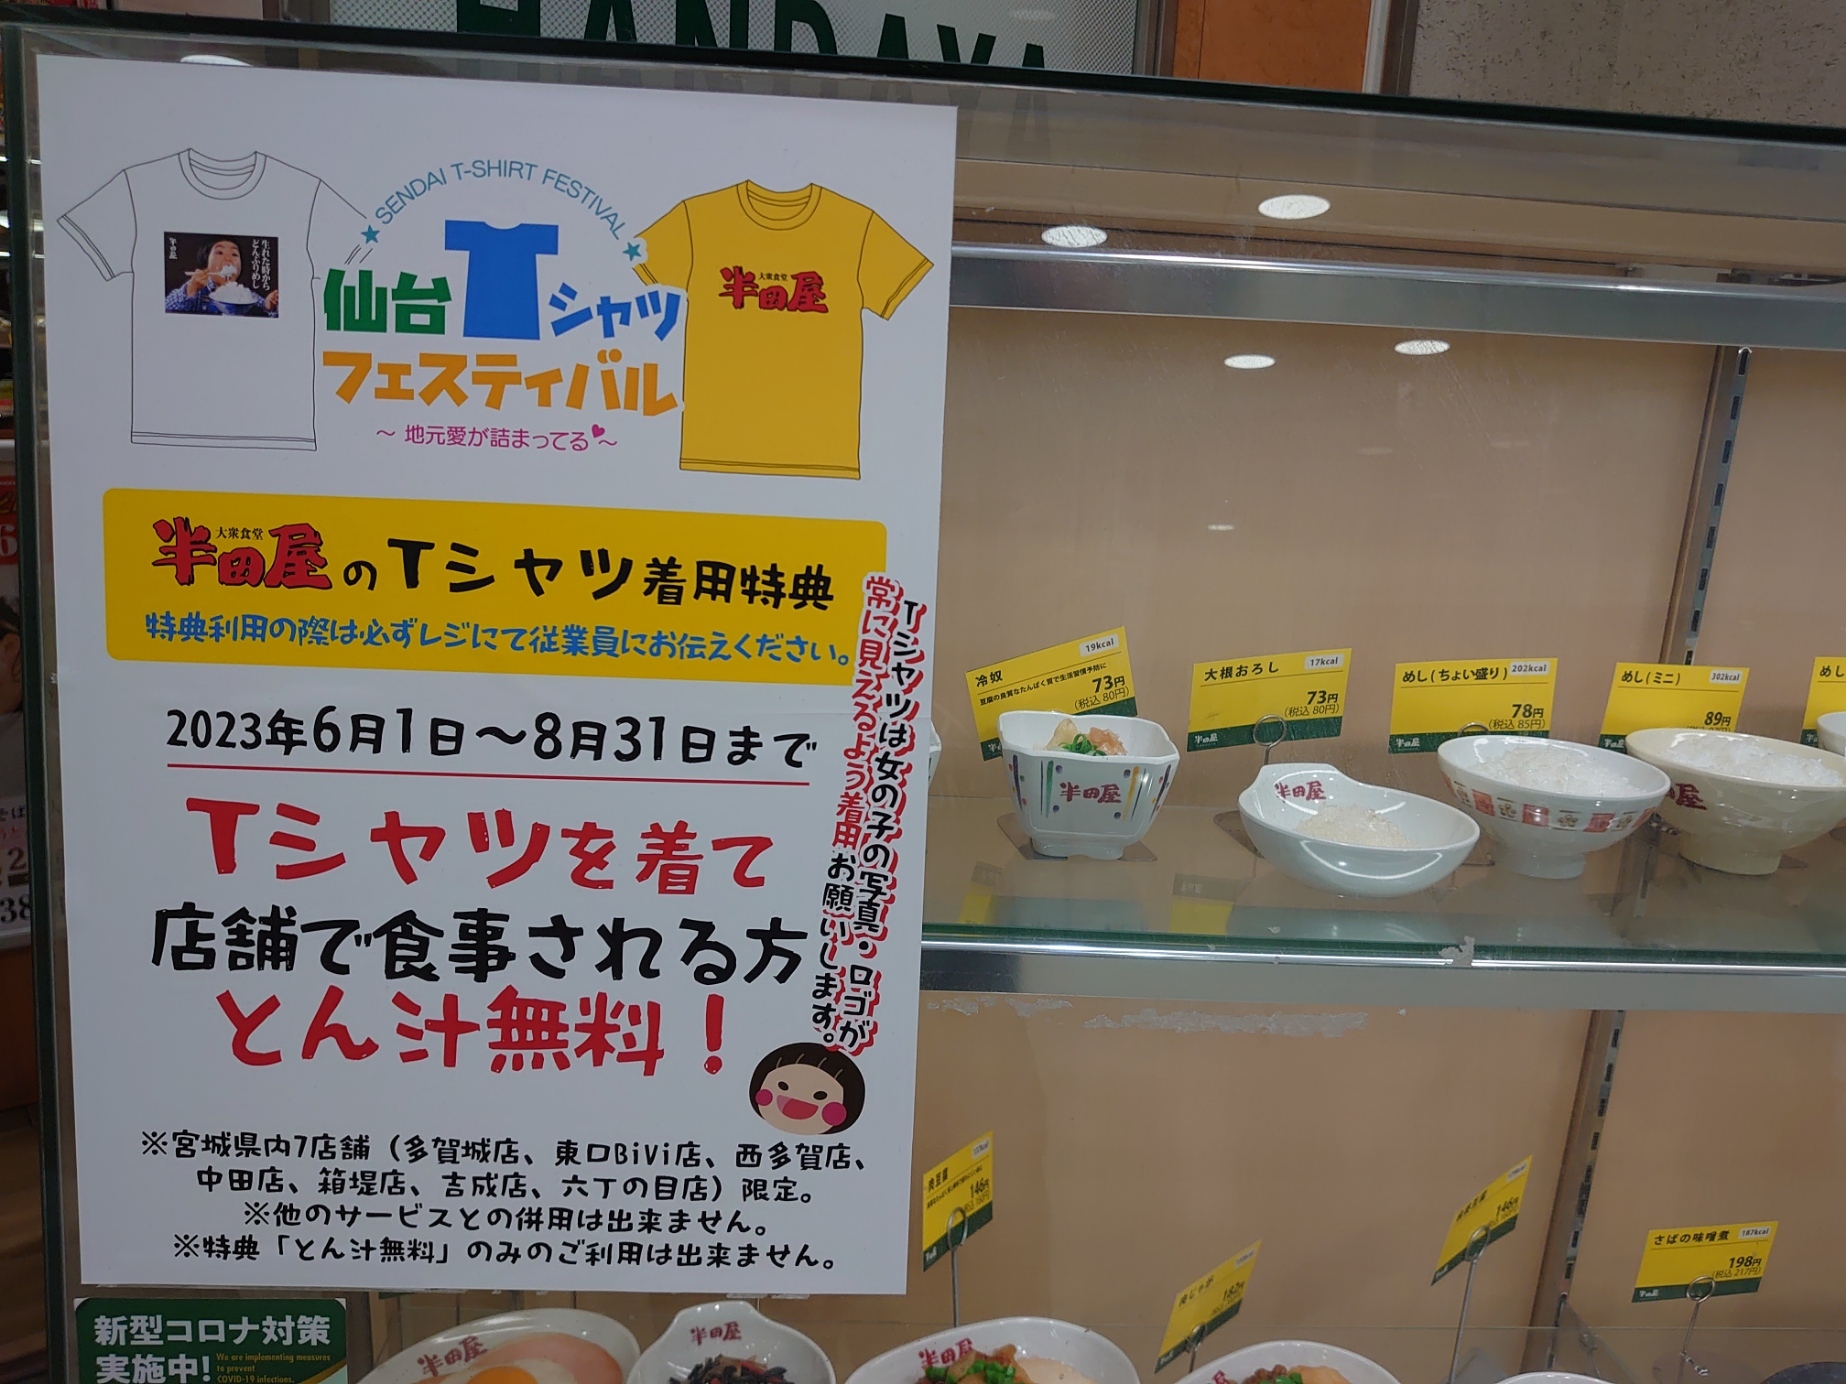 仙台Tシャツフェスティバル連動イベント「とん汁無料」